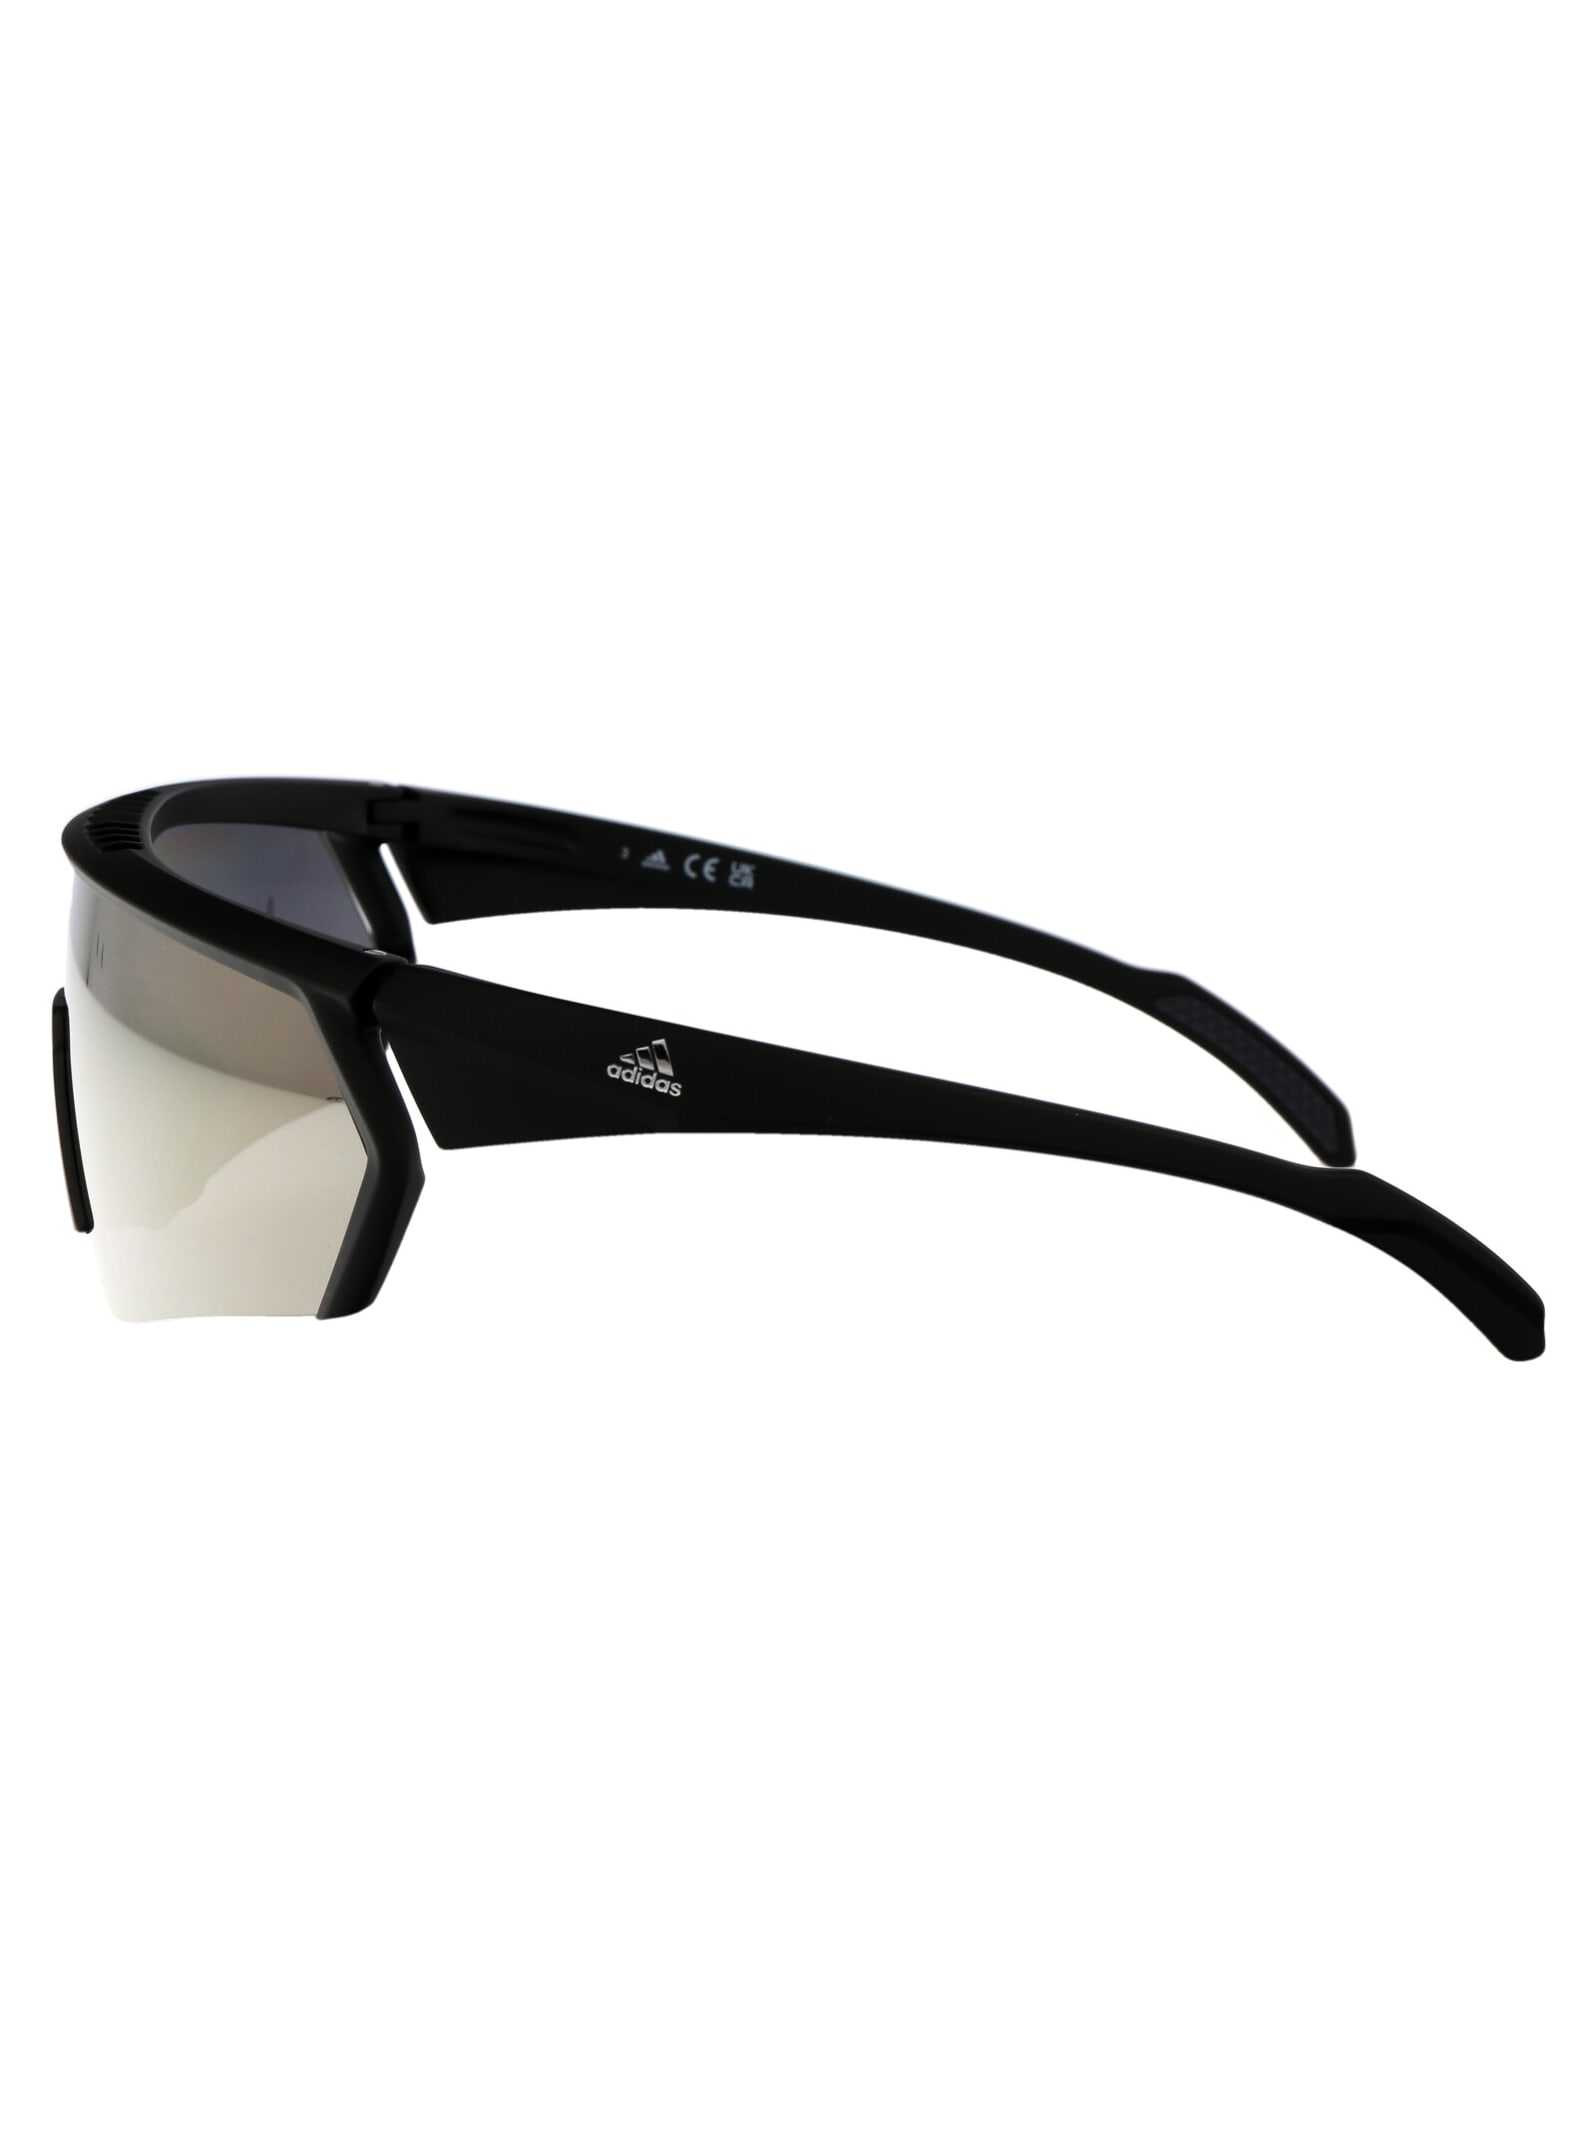 Shop Adidas Originals Cmpt Aero Sunglasses In 02g Nero Opaco/marrone Specchiato